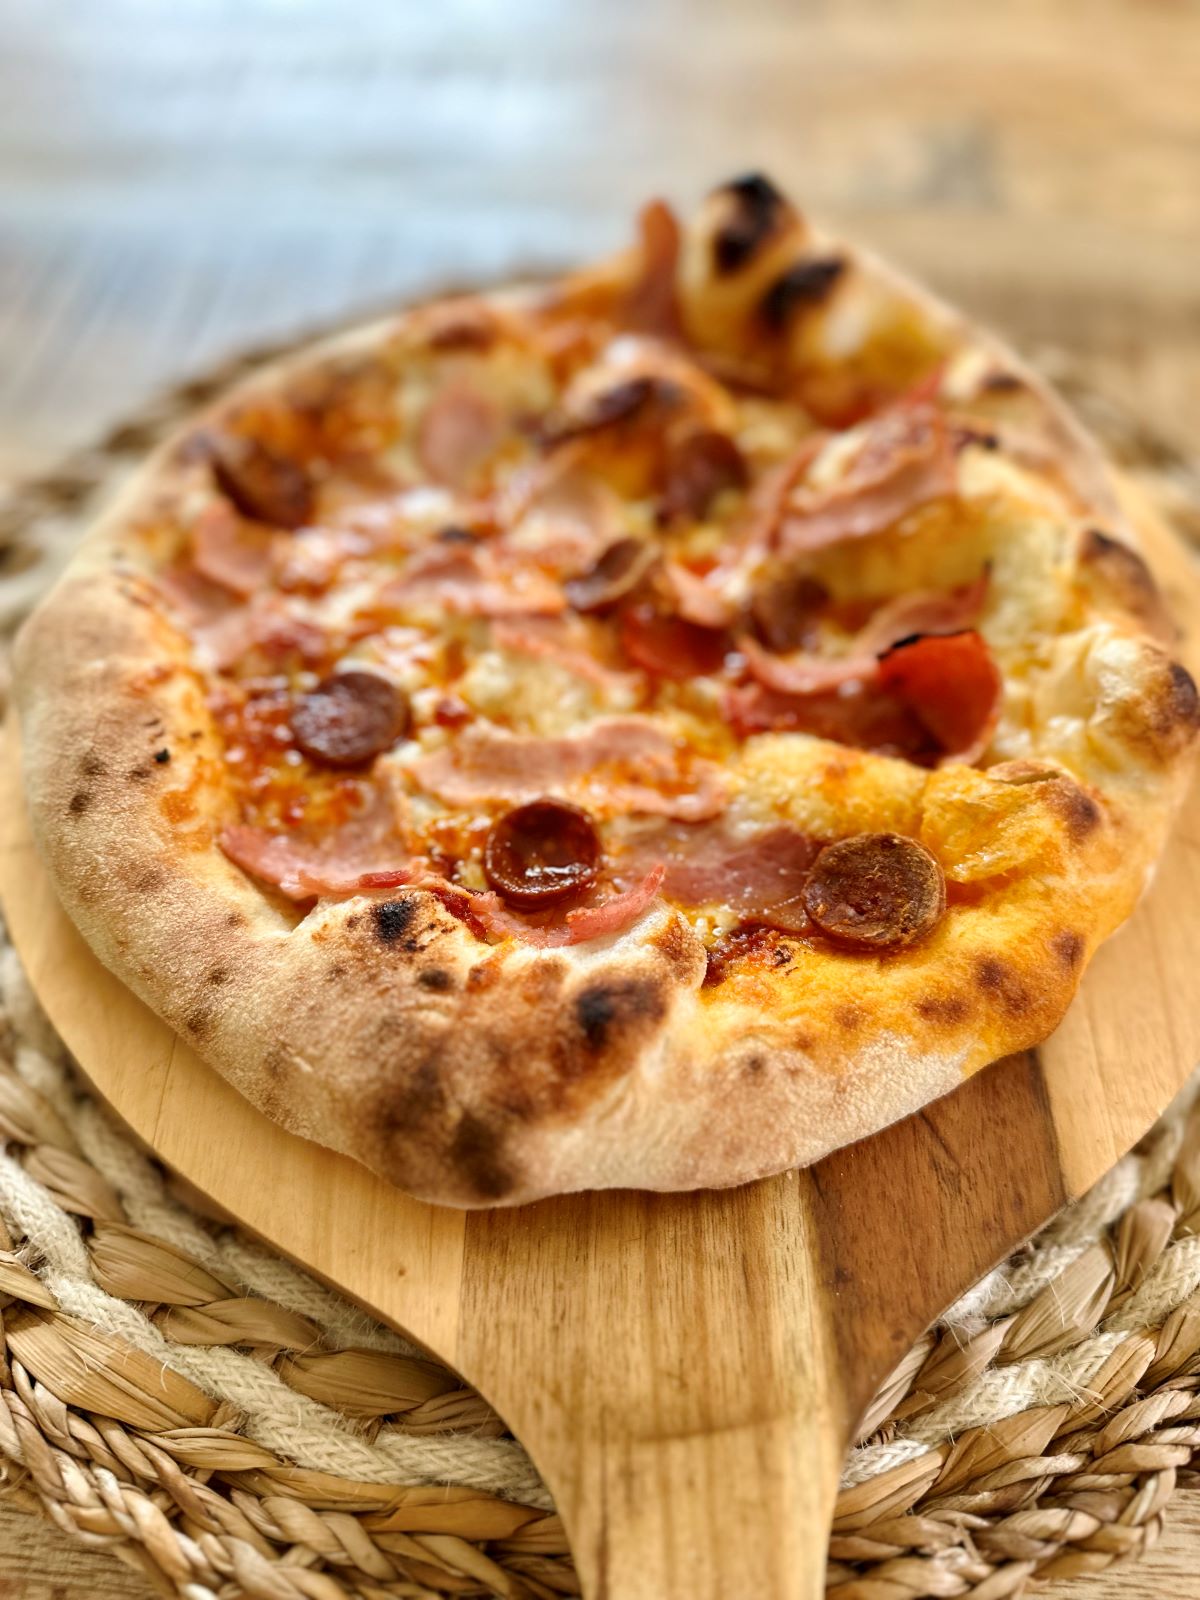 Pizza jambon chorizo cuite au four à pizza, avec une pâte napolitaine